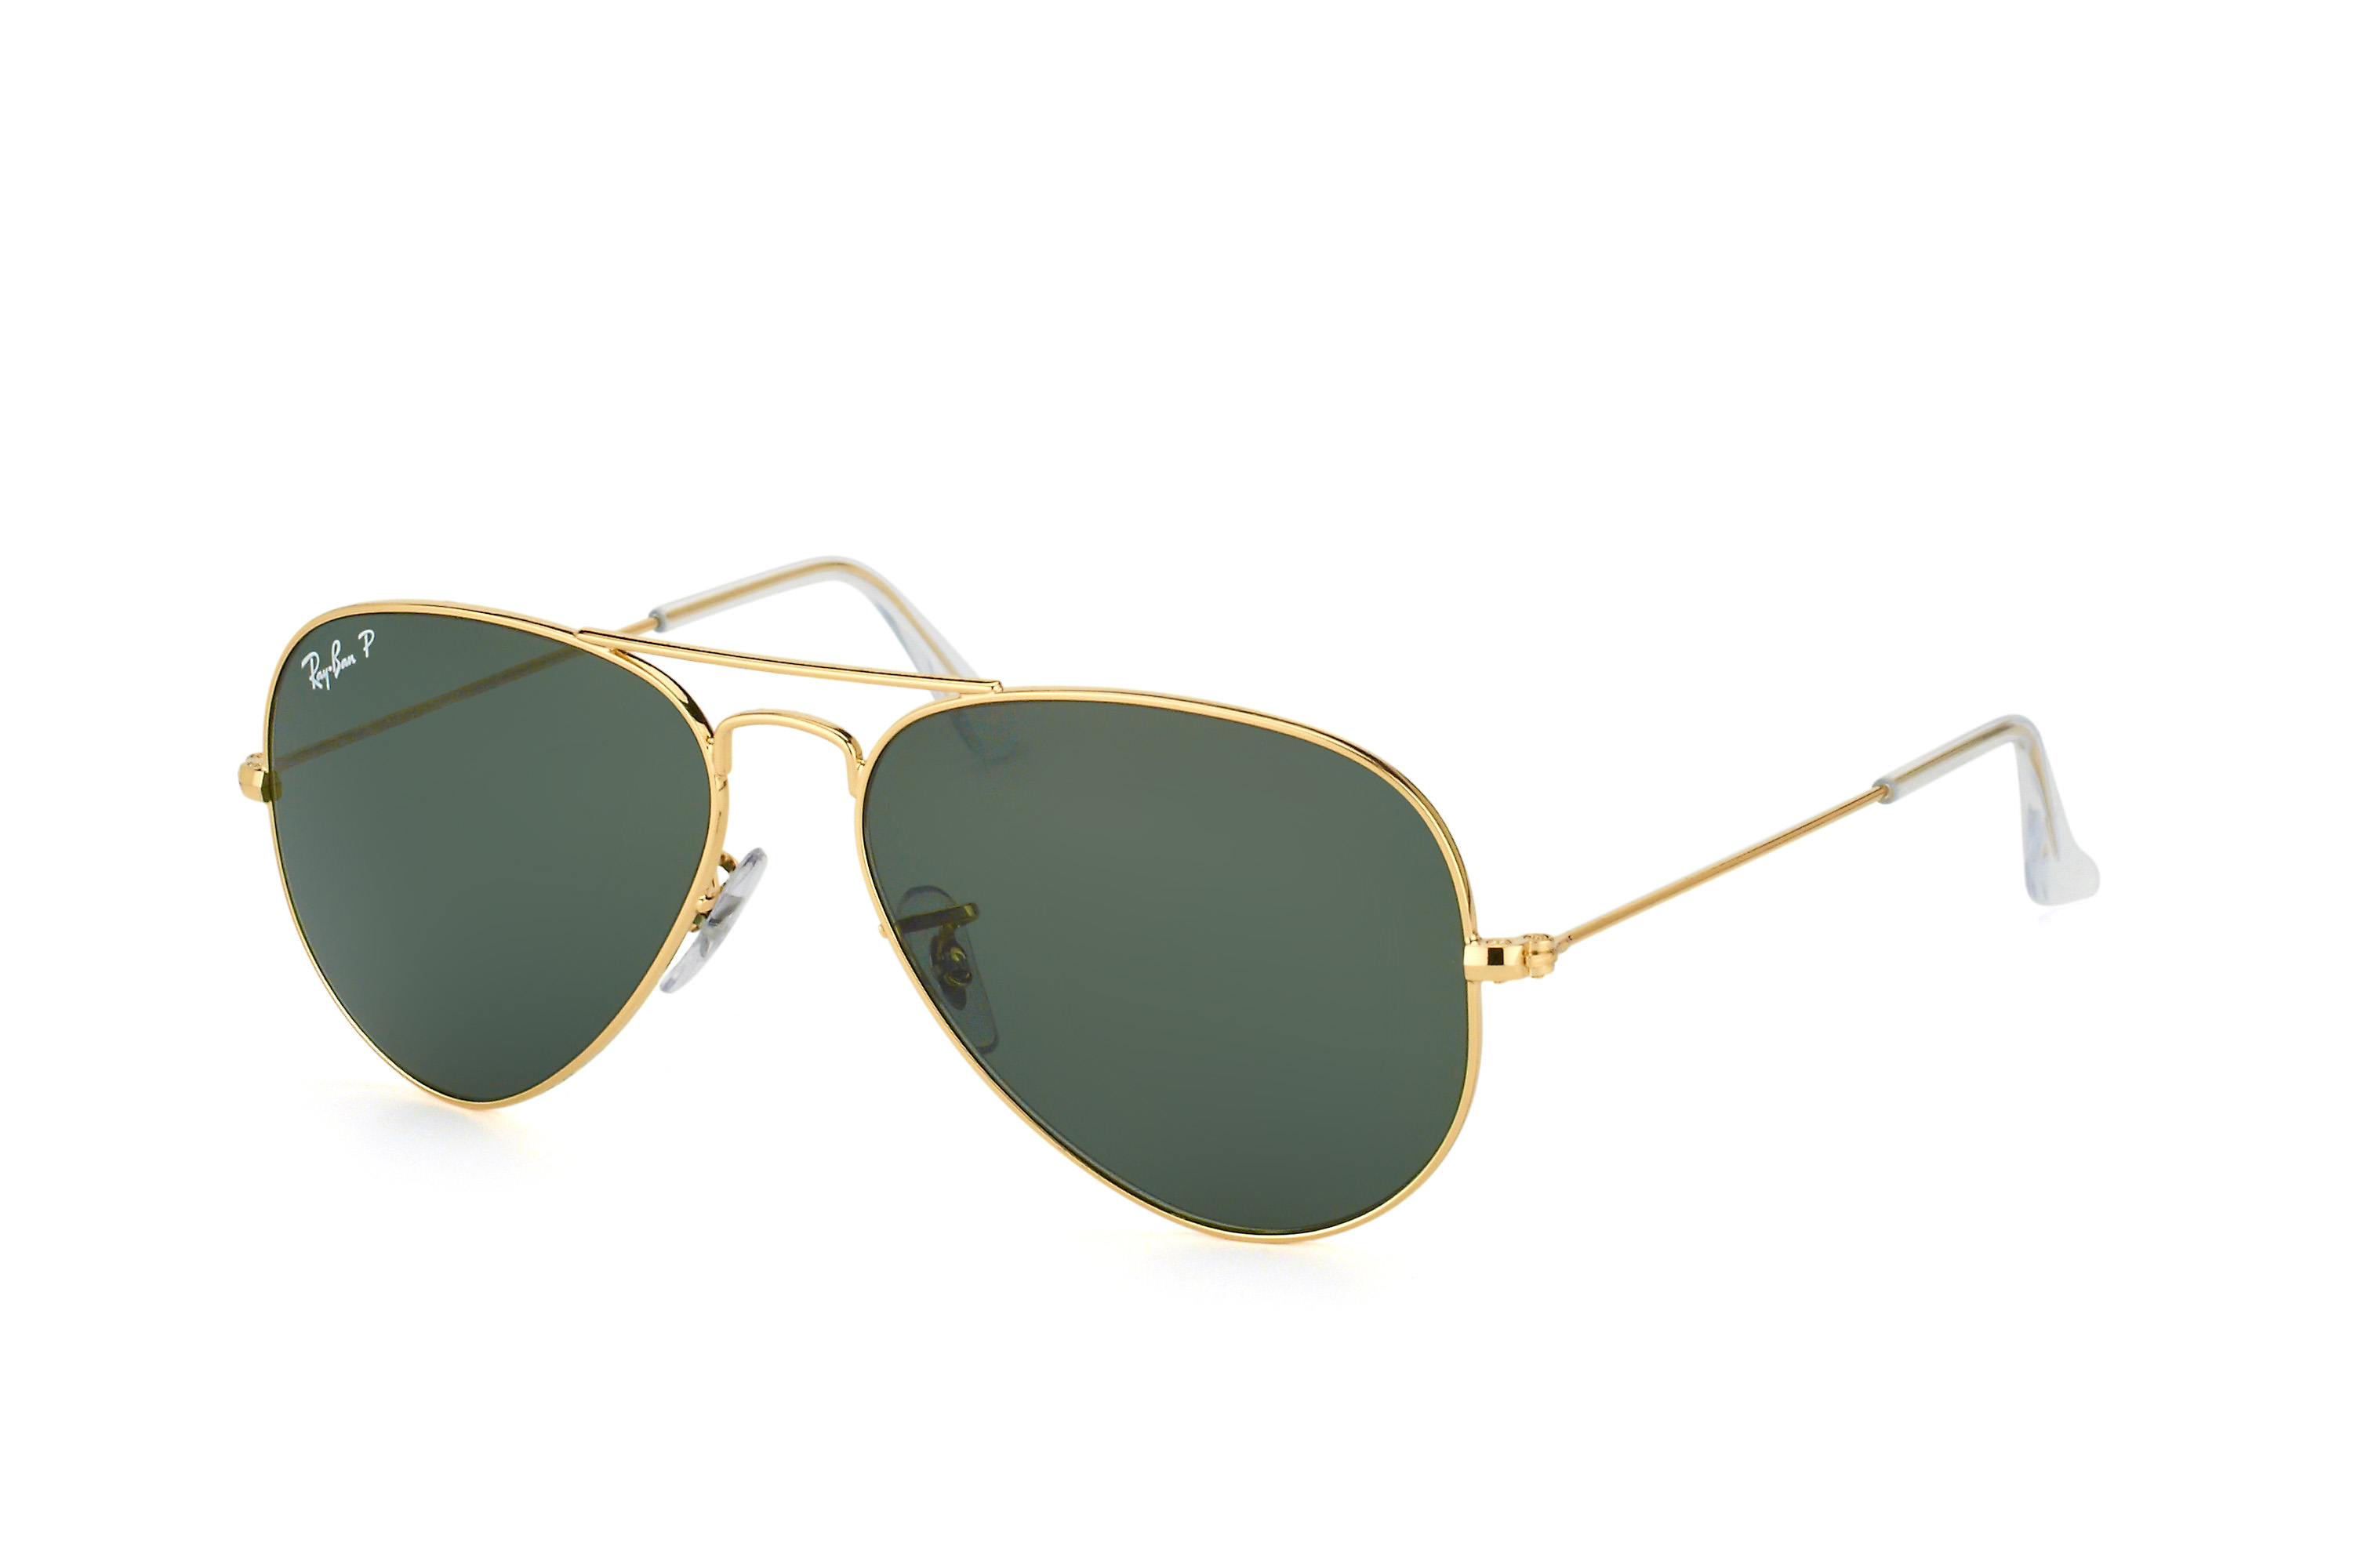 Buy Ray-Ban Aviator RB 3025 001/58 small polarized Sunglasses